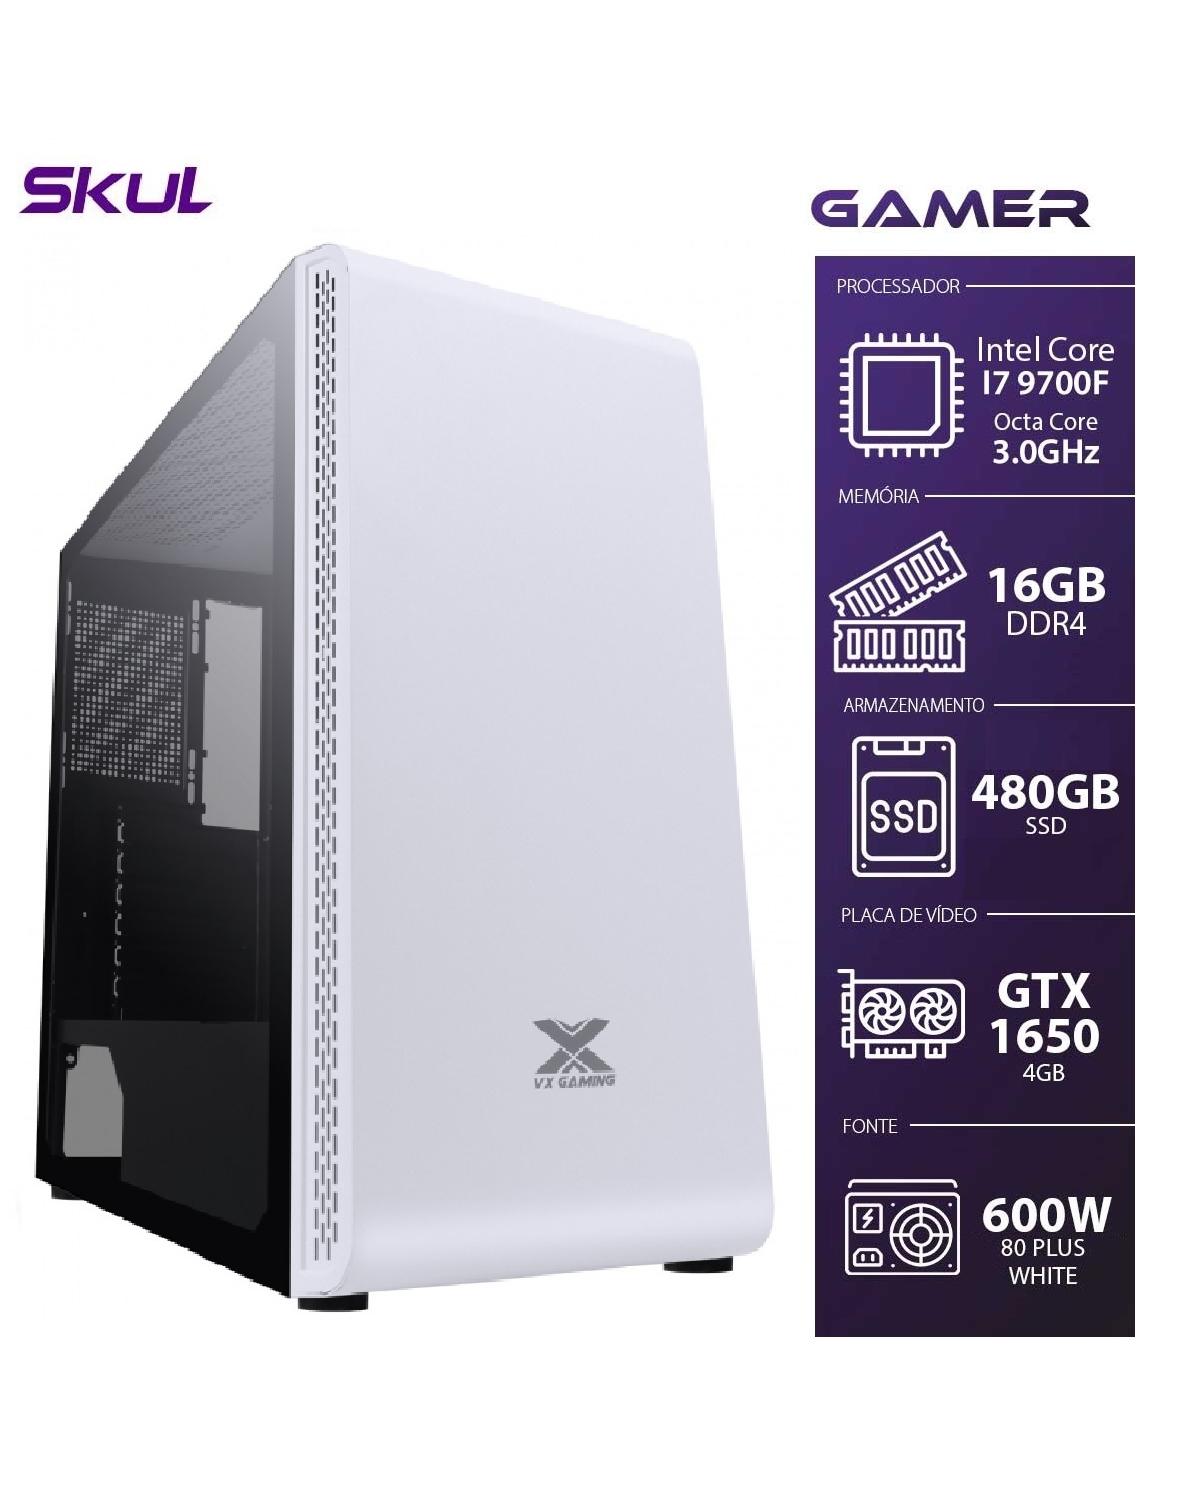 COMPUTADOR GAMER 7000 - I7 9700F 3.0GHZ 9ª GER. MEM. 16GB DDR4 SSD 480GB HD 1TB GTX 1650 4GB FONTE 600W WHITE